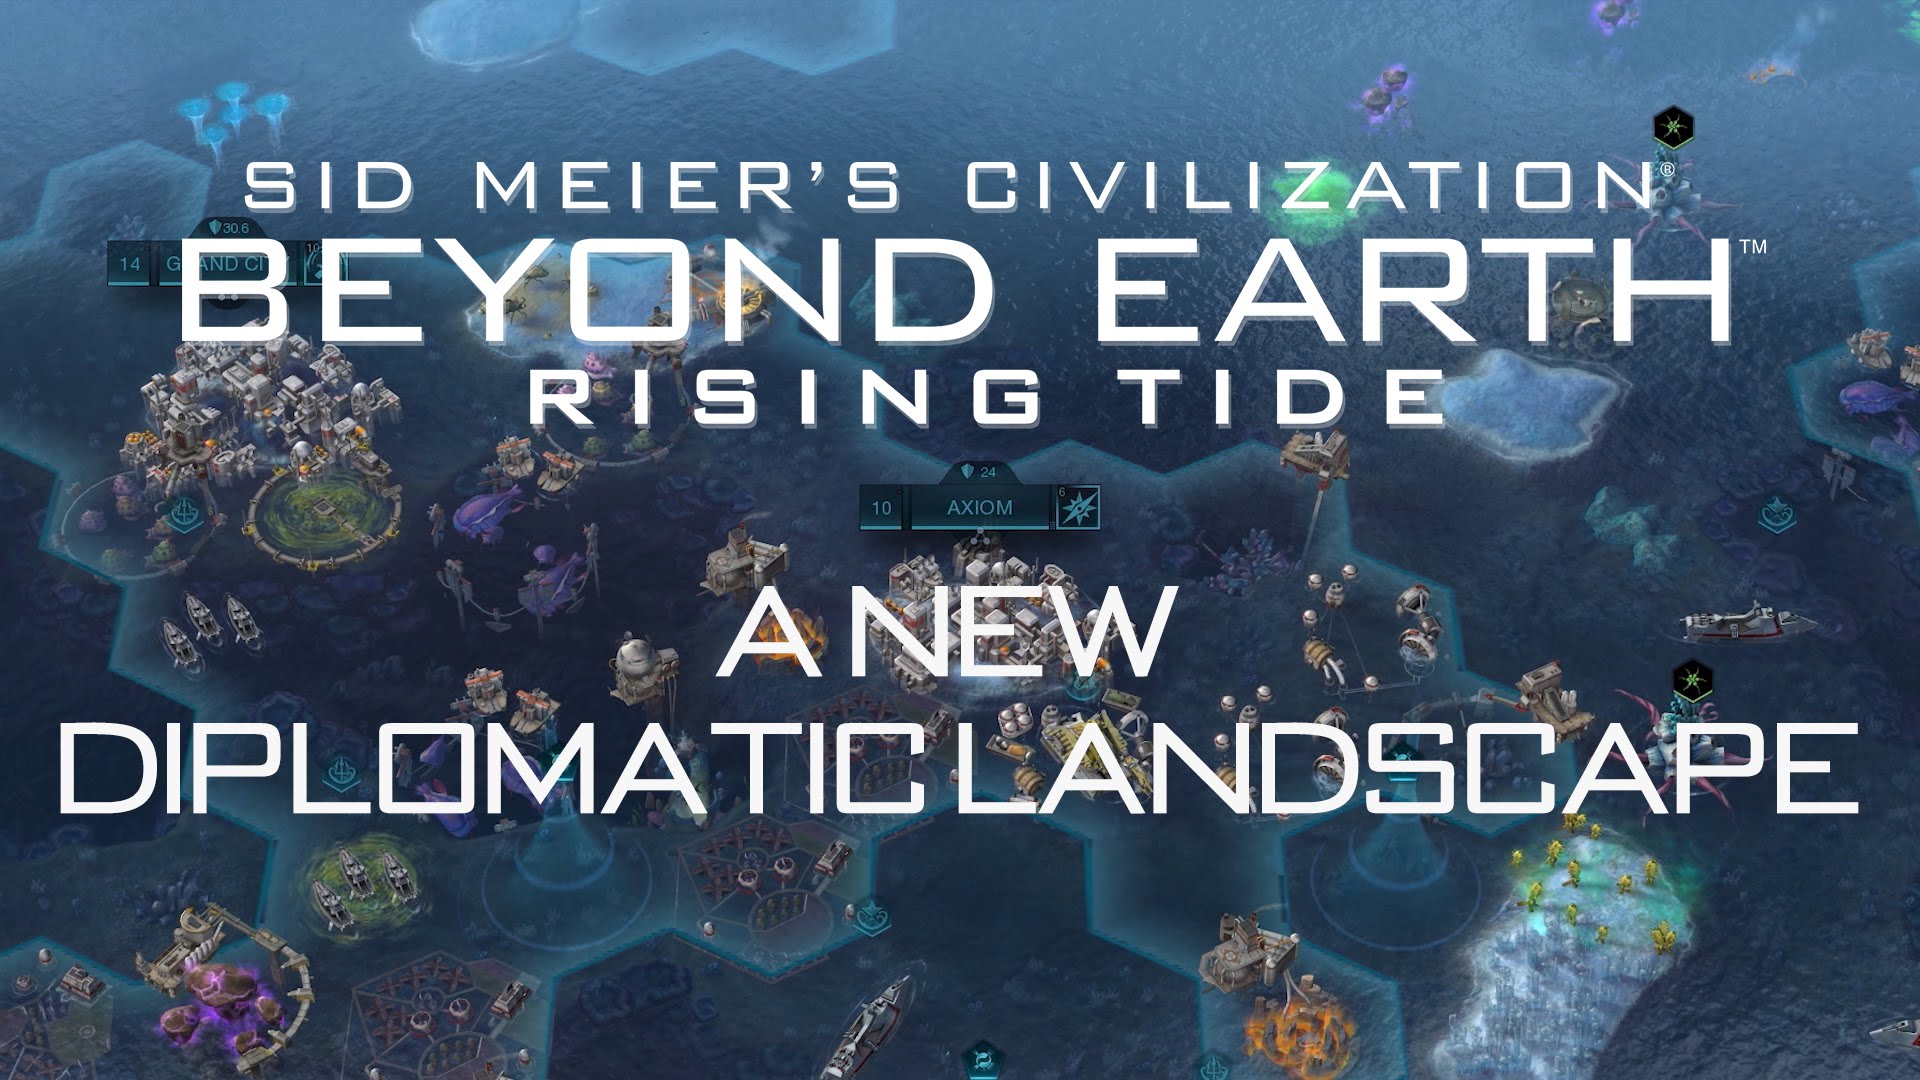 Civilization: Beyond Earth-Rising Tide Featurette - “A New Diplomatic Landscape”